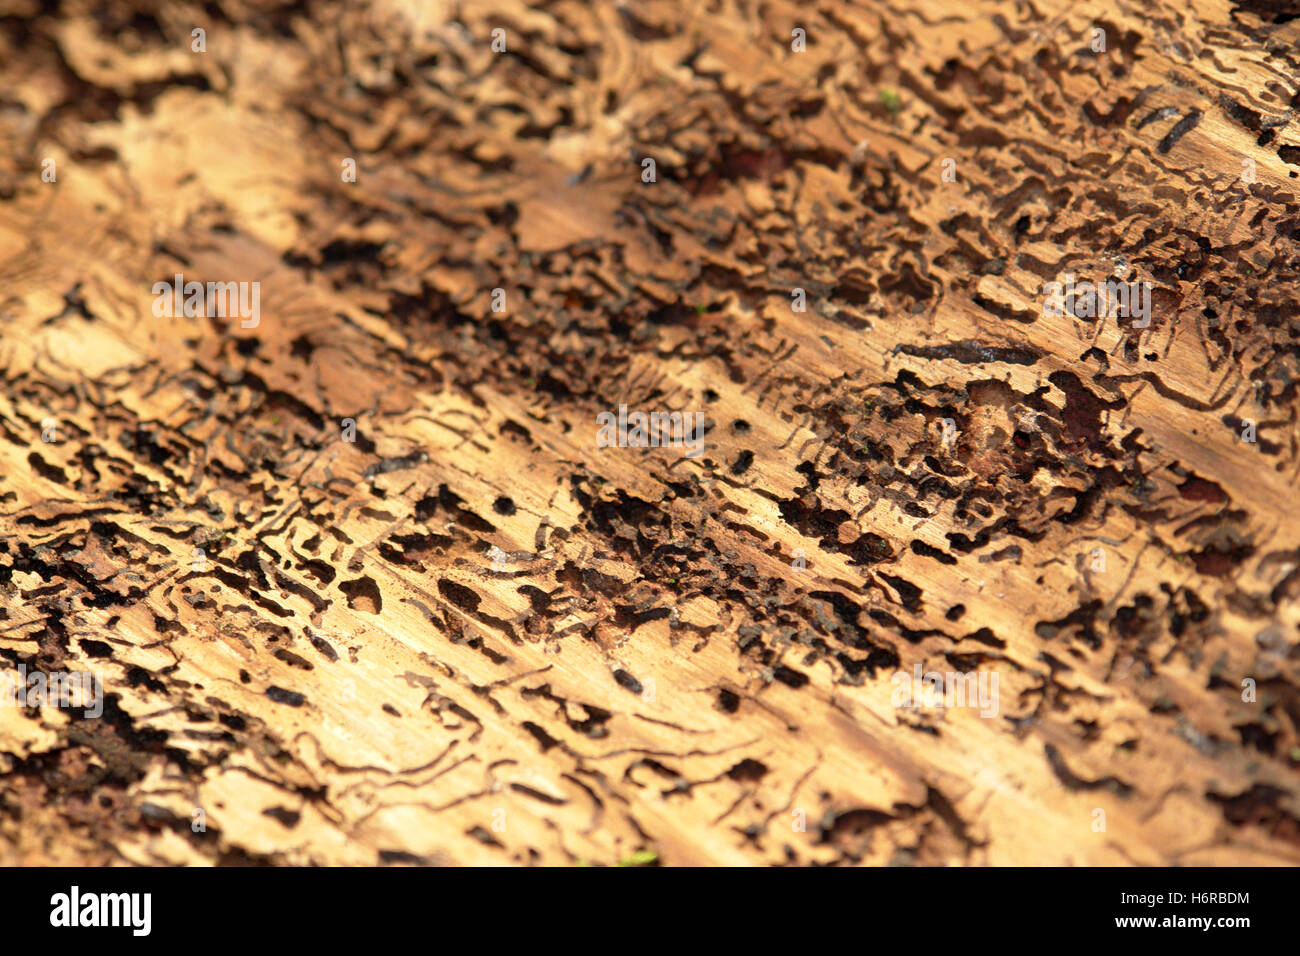 Rinde löchrigen Borkenkäfer formatfüllende perforiert Tier Insekt Käfer Holz Rinde Pest Überwachung löchrigen Loch abstrakte Änderung Stockfoto